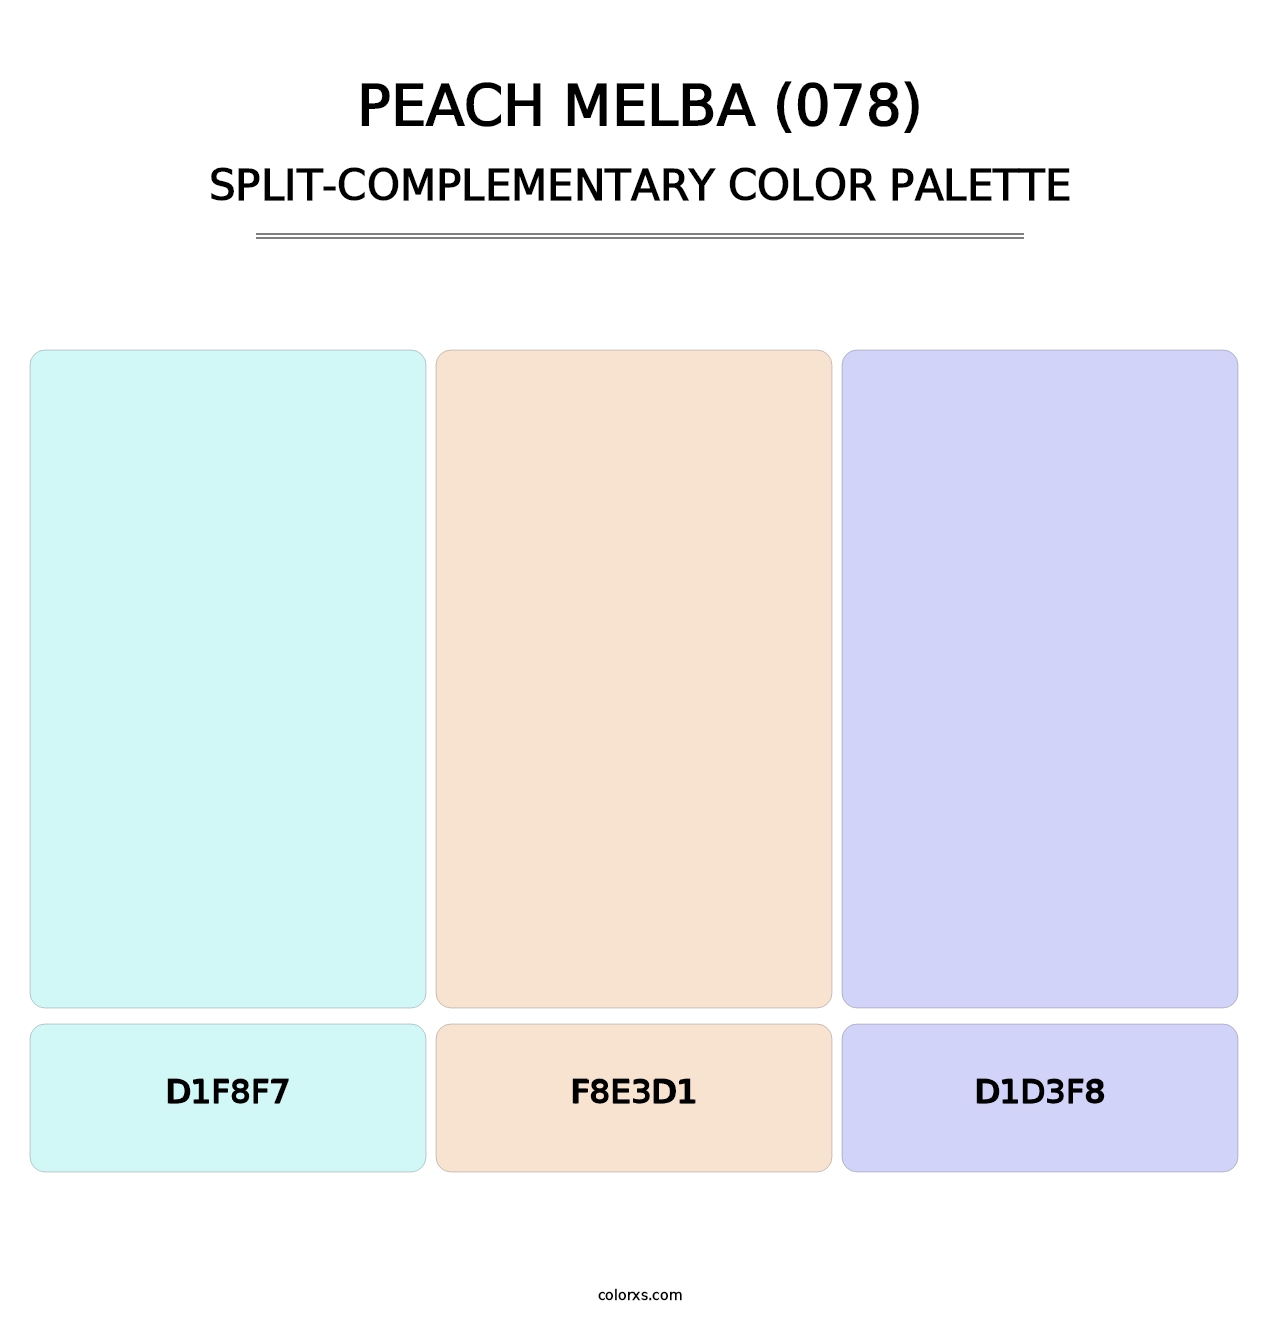 Peach Melba (078) - Split-Complementary Color Palette